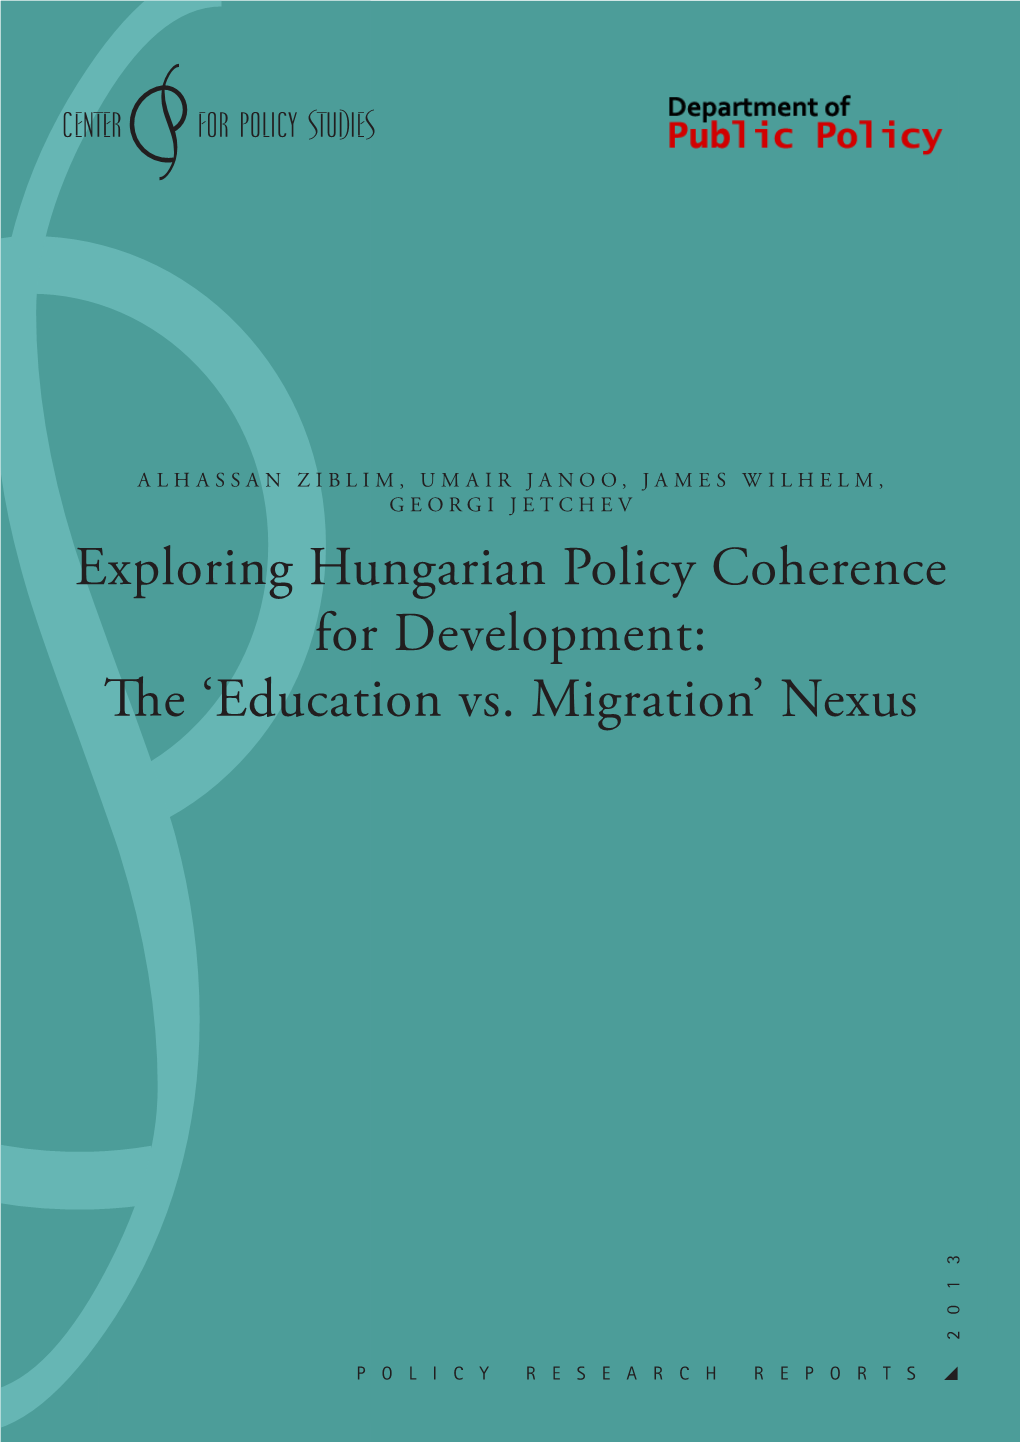 'Education Vs. Migration' Nexus